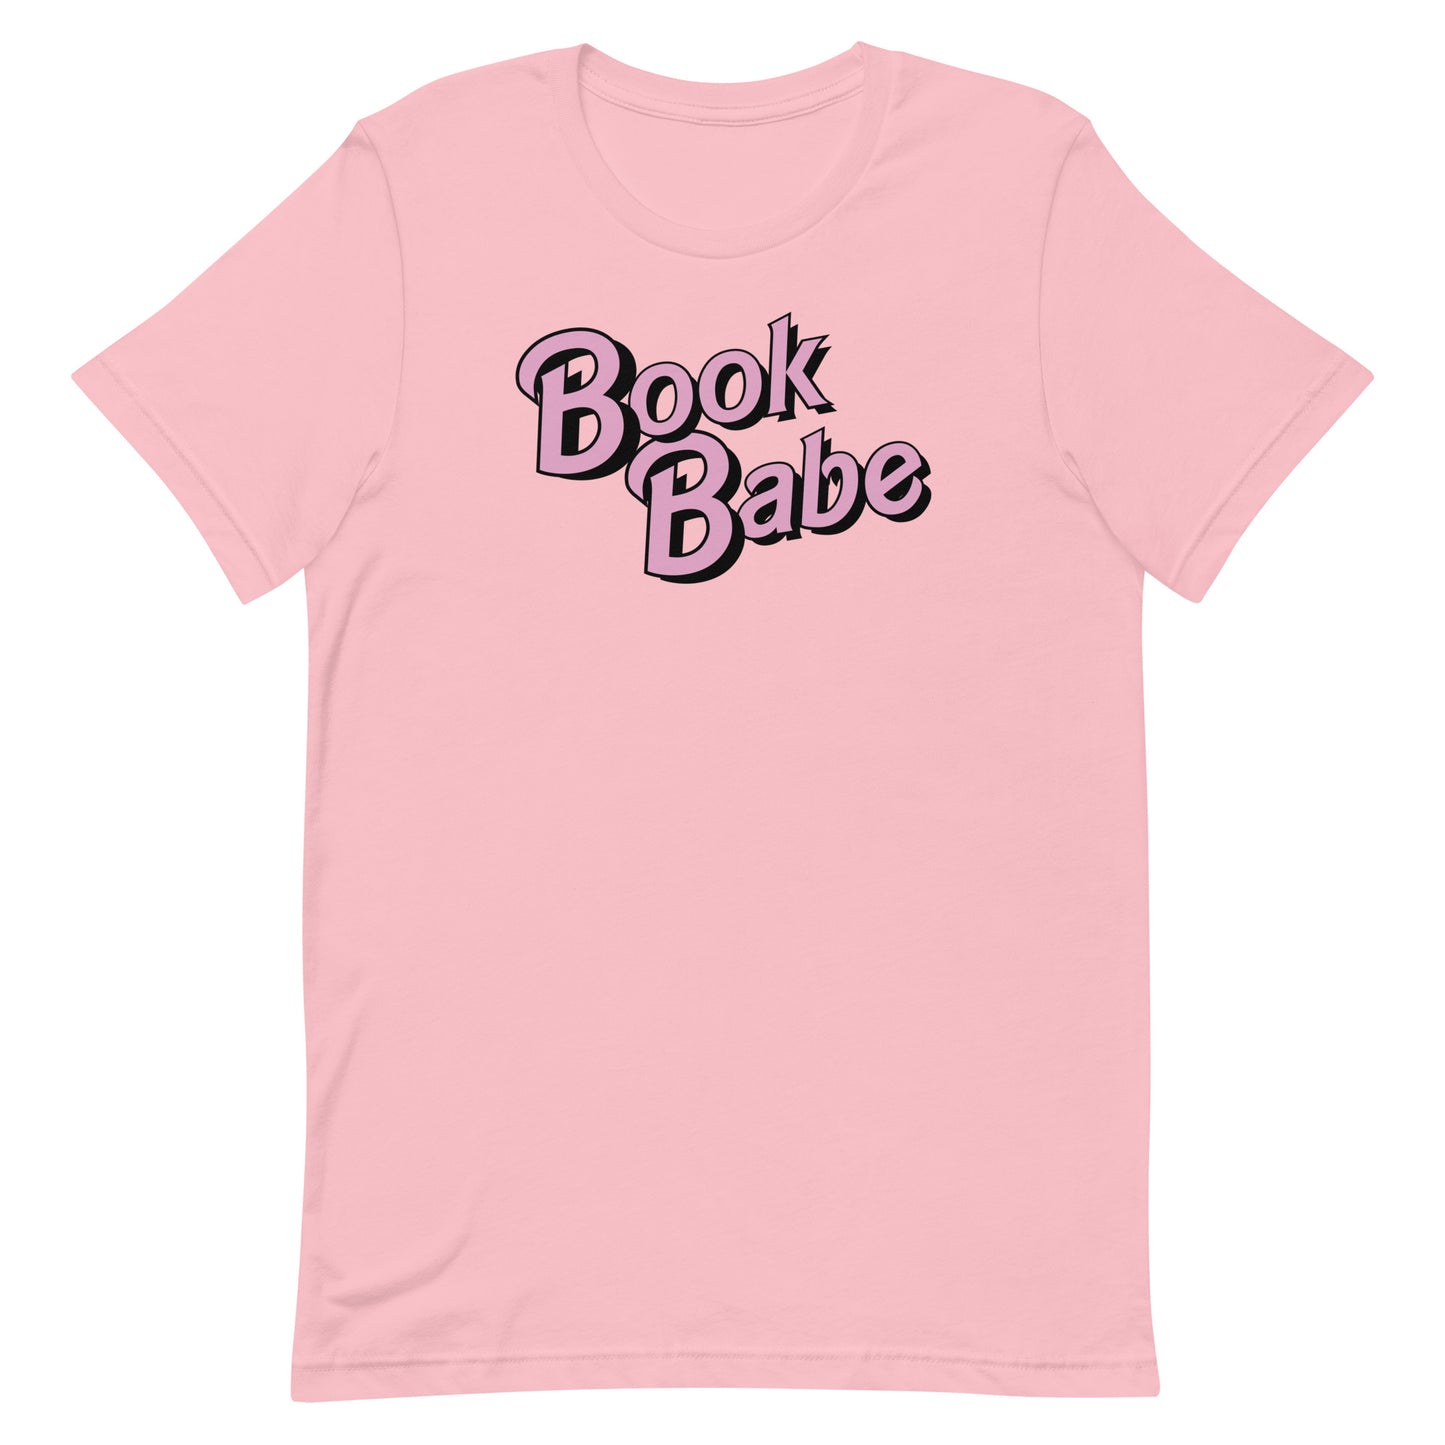 Book babe Barbie Tee Shirt 